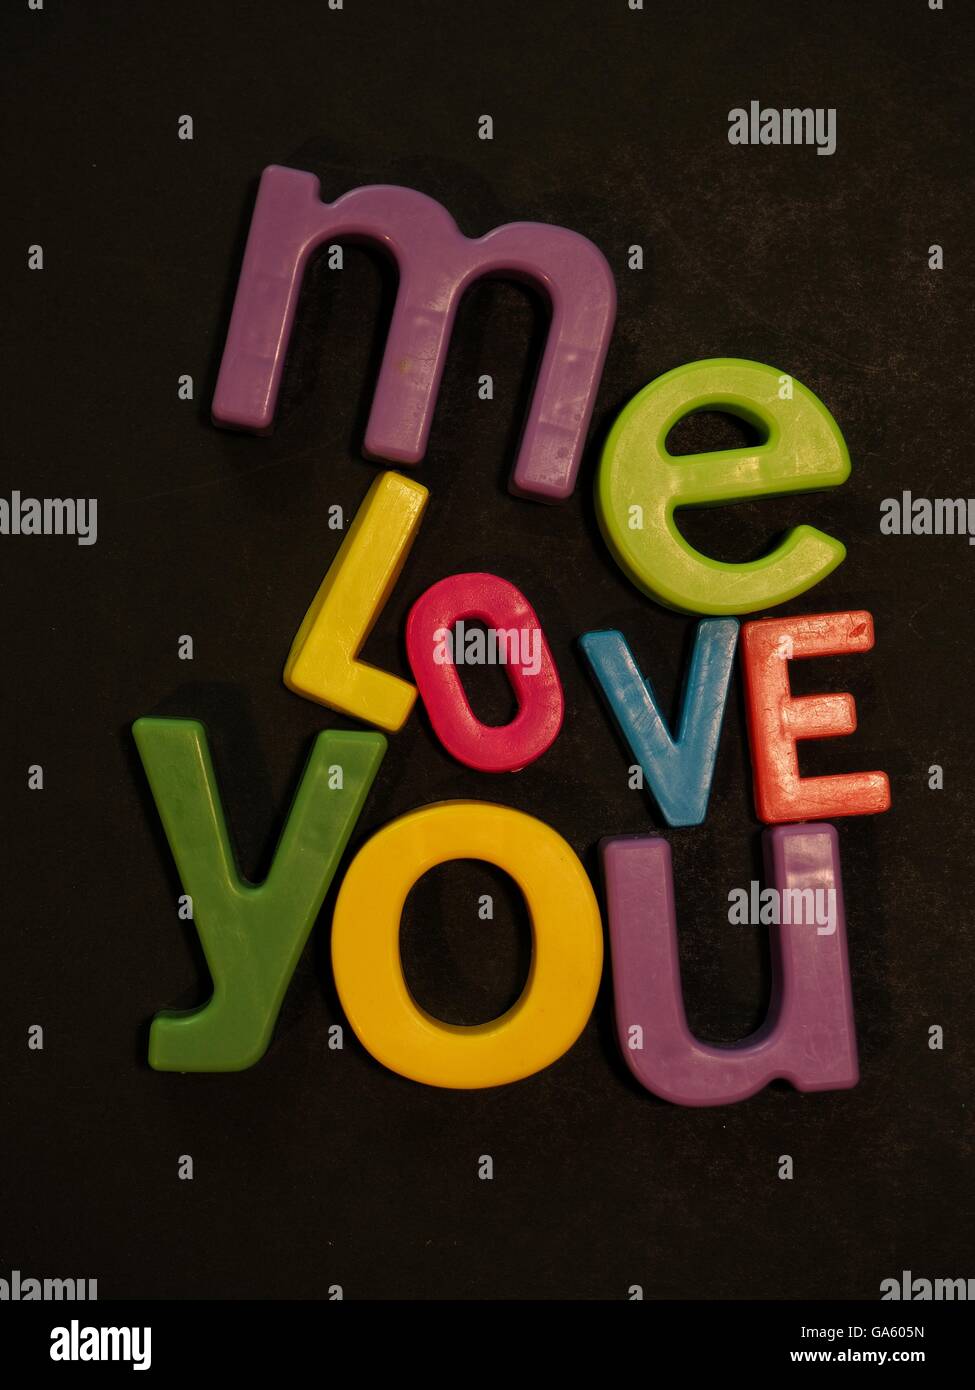 Du und ich, Liebe. Inspirierende Botschaft in lebhaften bunten Magneten Buchstaben auf schwarzem Hintergrund Stockfoto